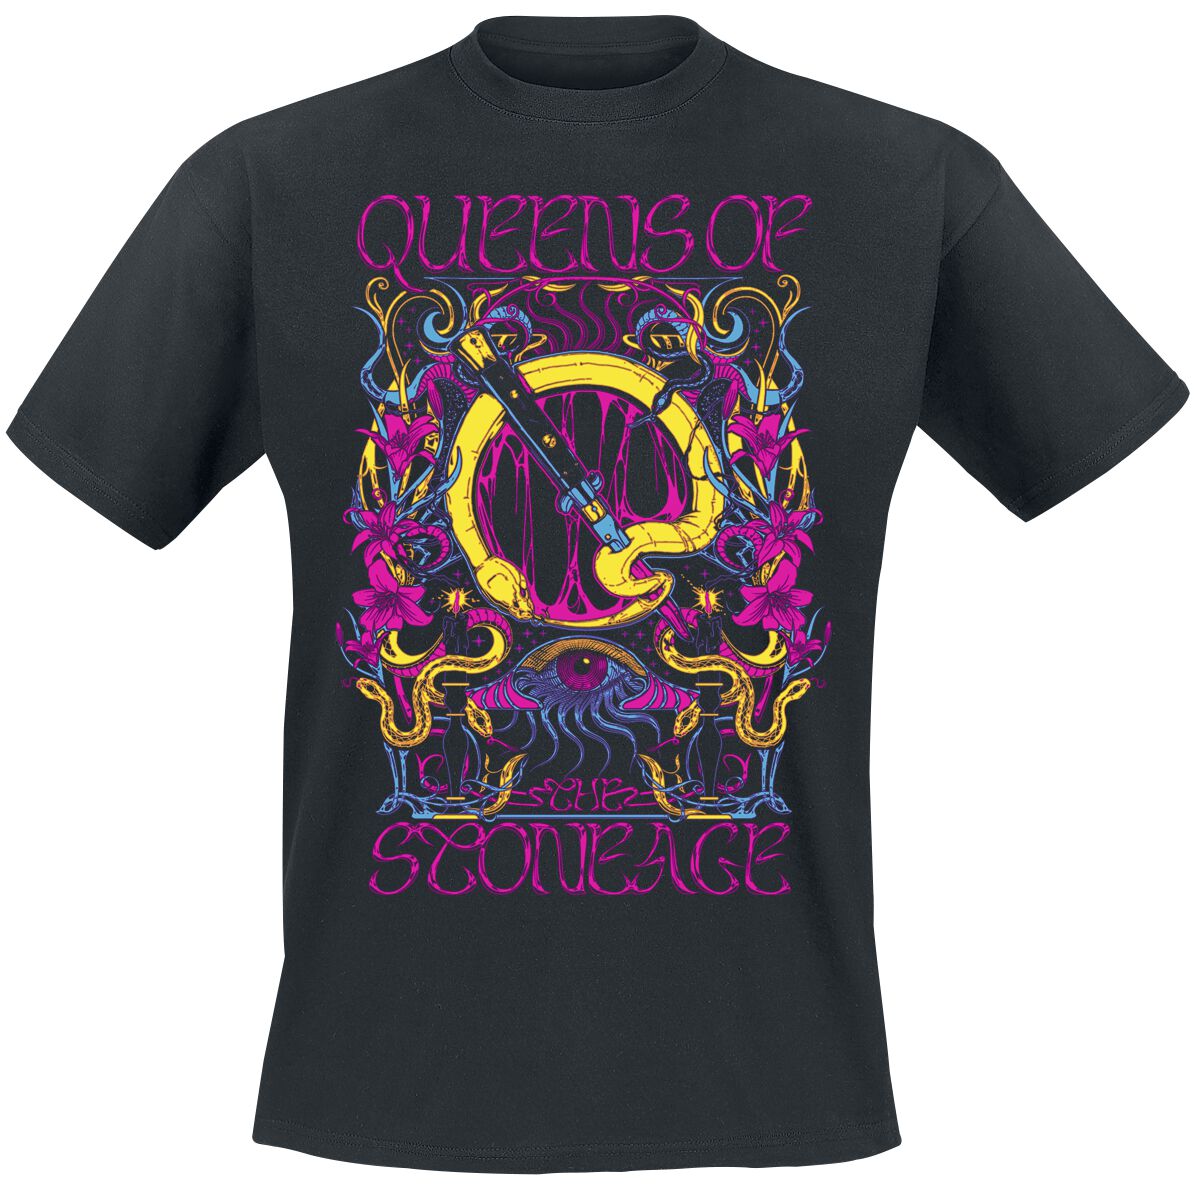 Queens Of The Stone Age T-Shirt - In Times New Roman - Neon Sacrilege - S bis 3XL - für Männer - Größe XL - schwarz  - Lizenziertes Merchandise!